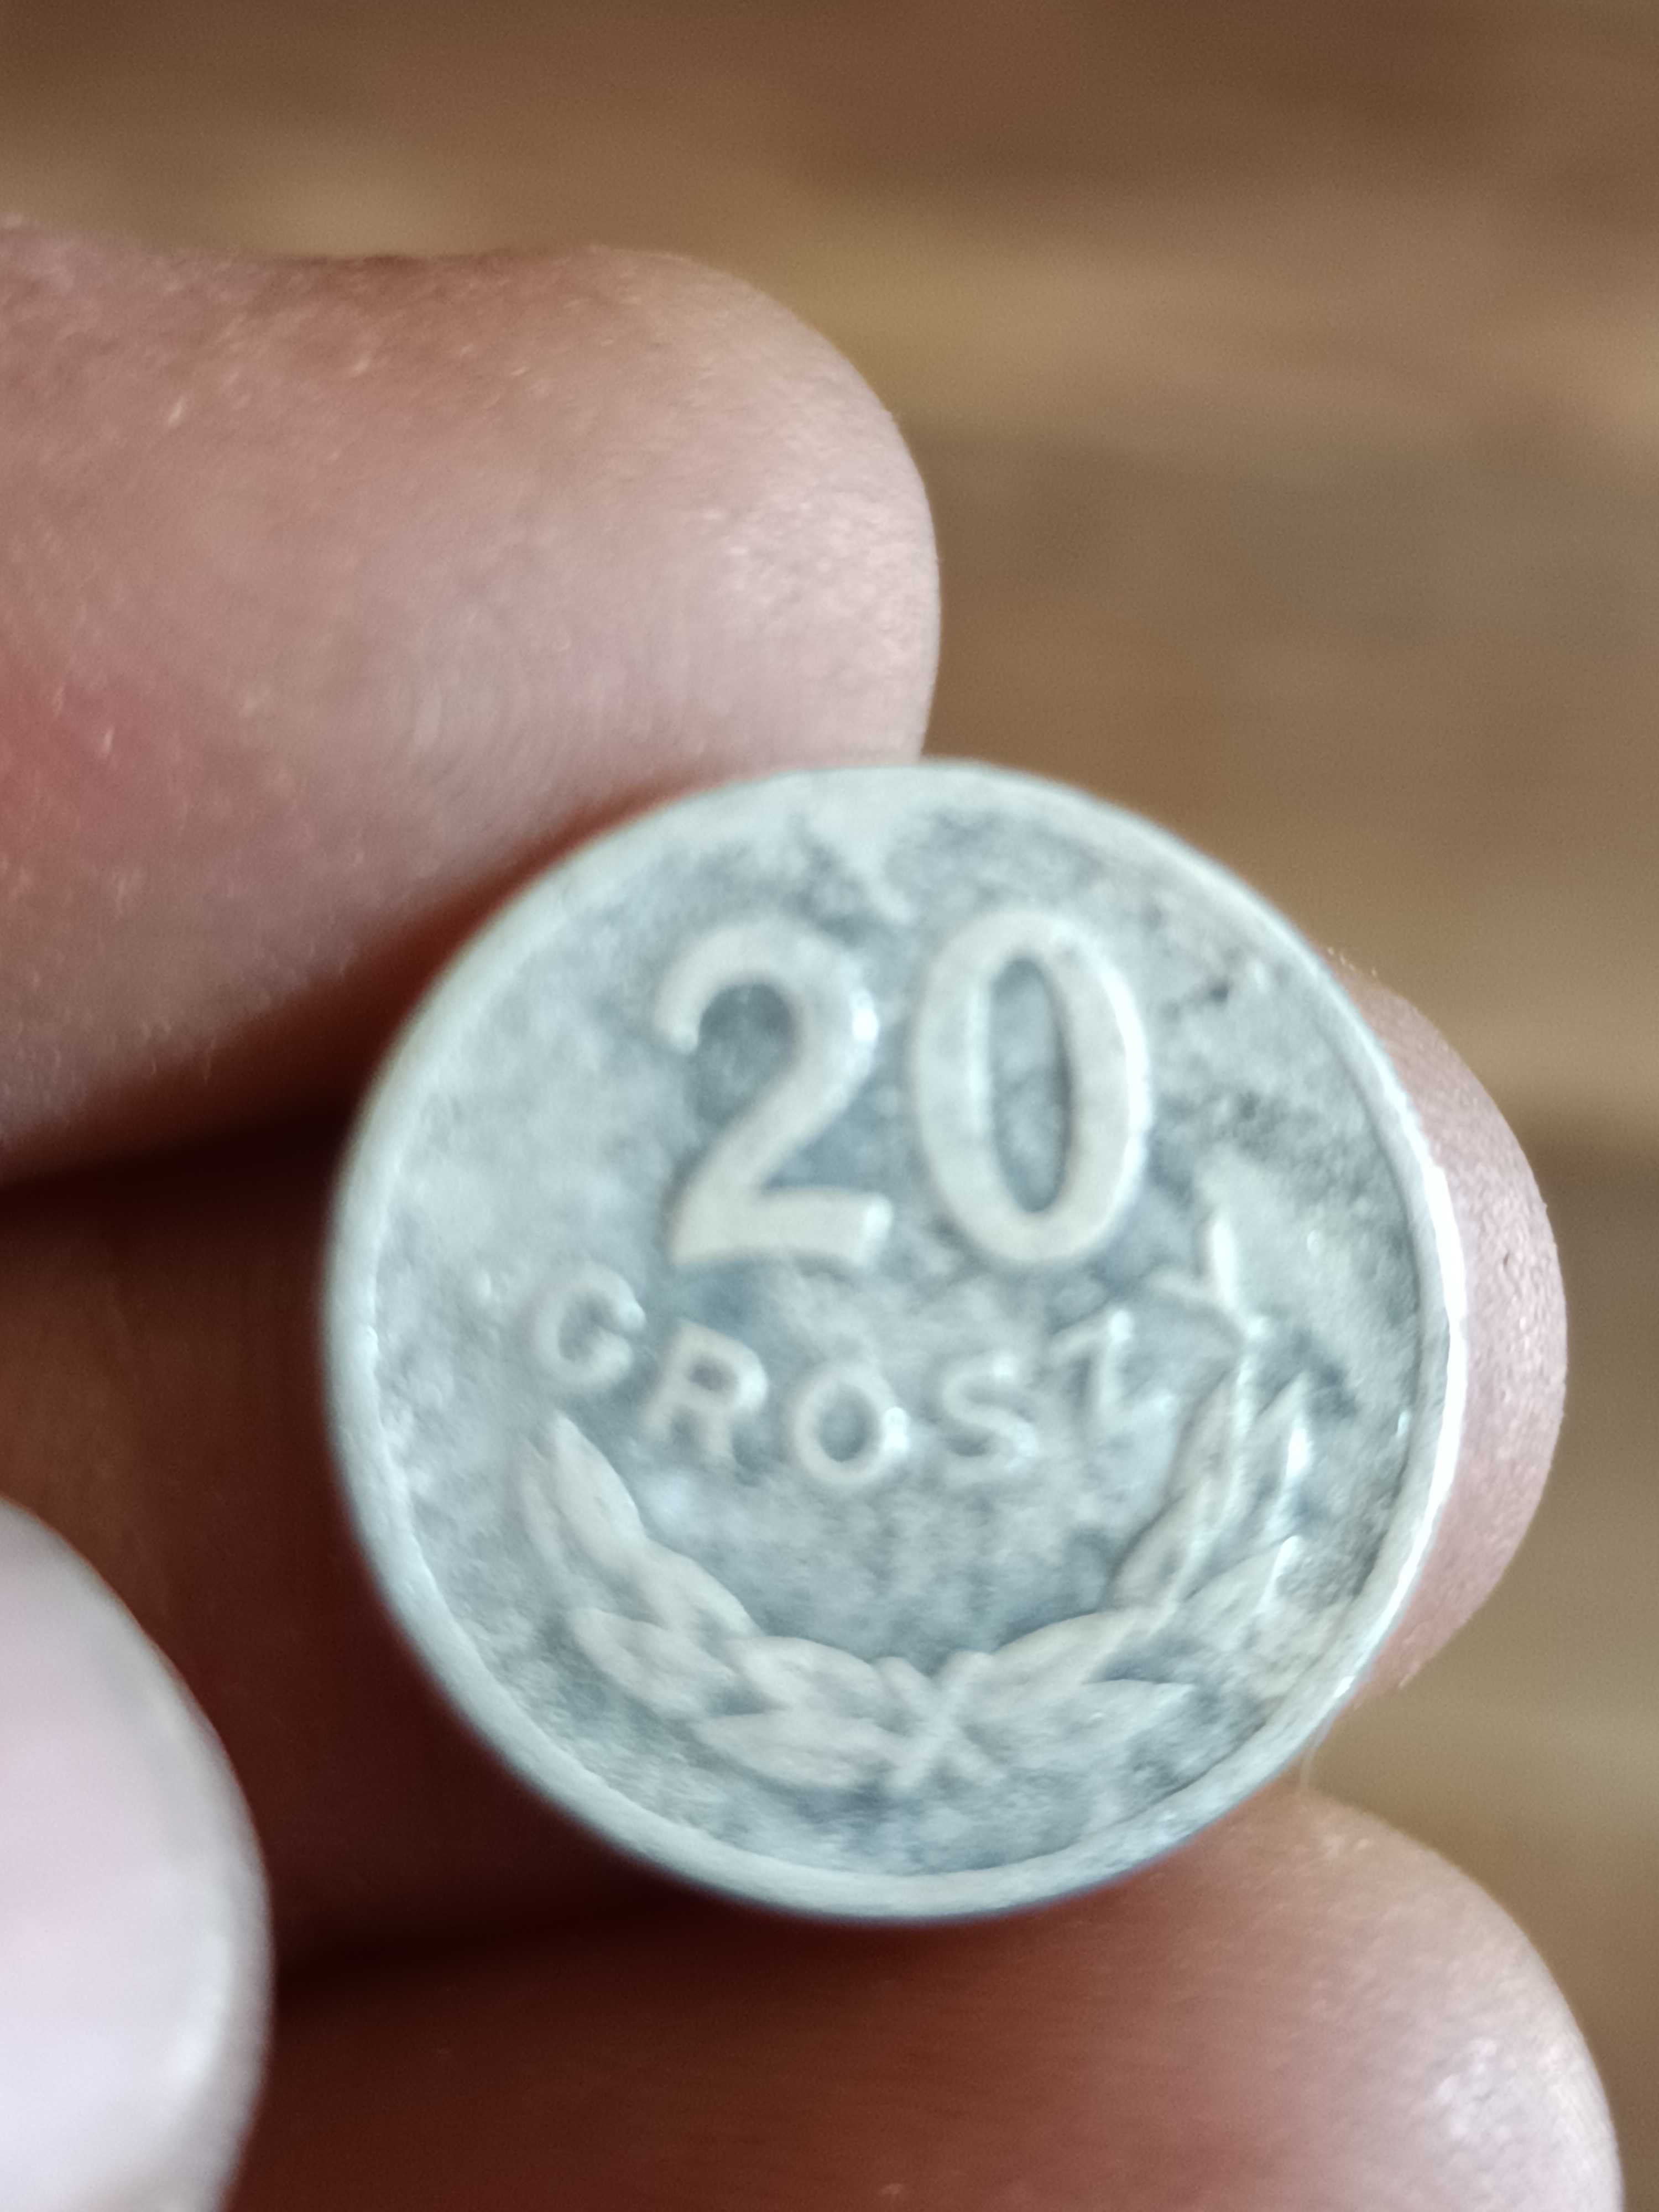 Sprzedam monetę 20 groszy 1949 rok